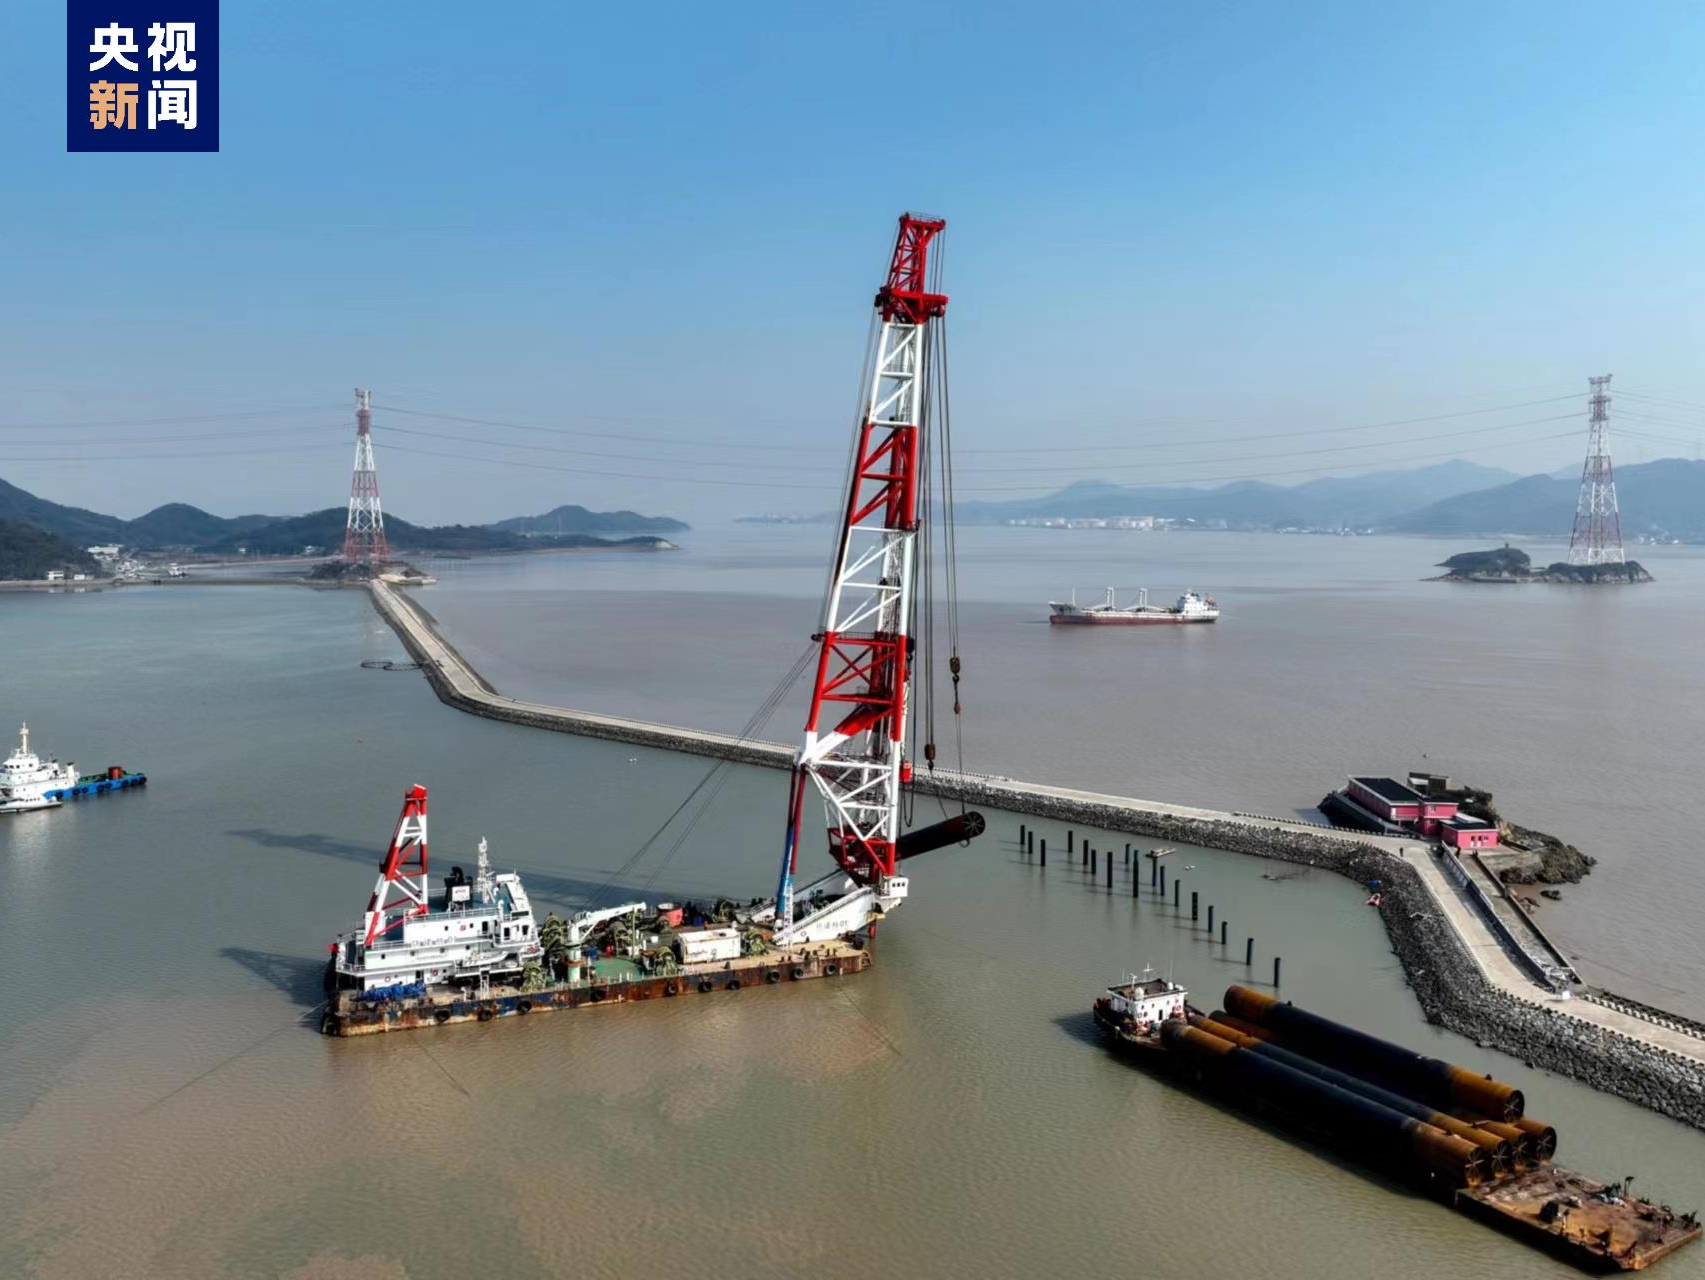 国内最大跨度跨海桥梁开启主墩桩基施工